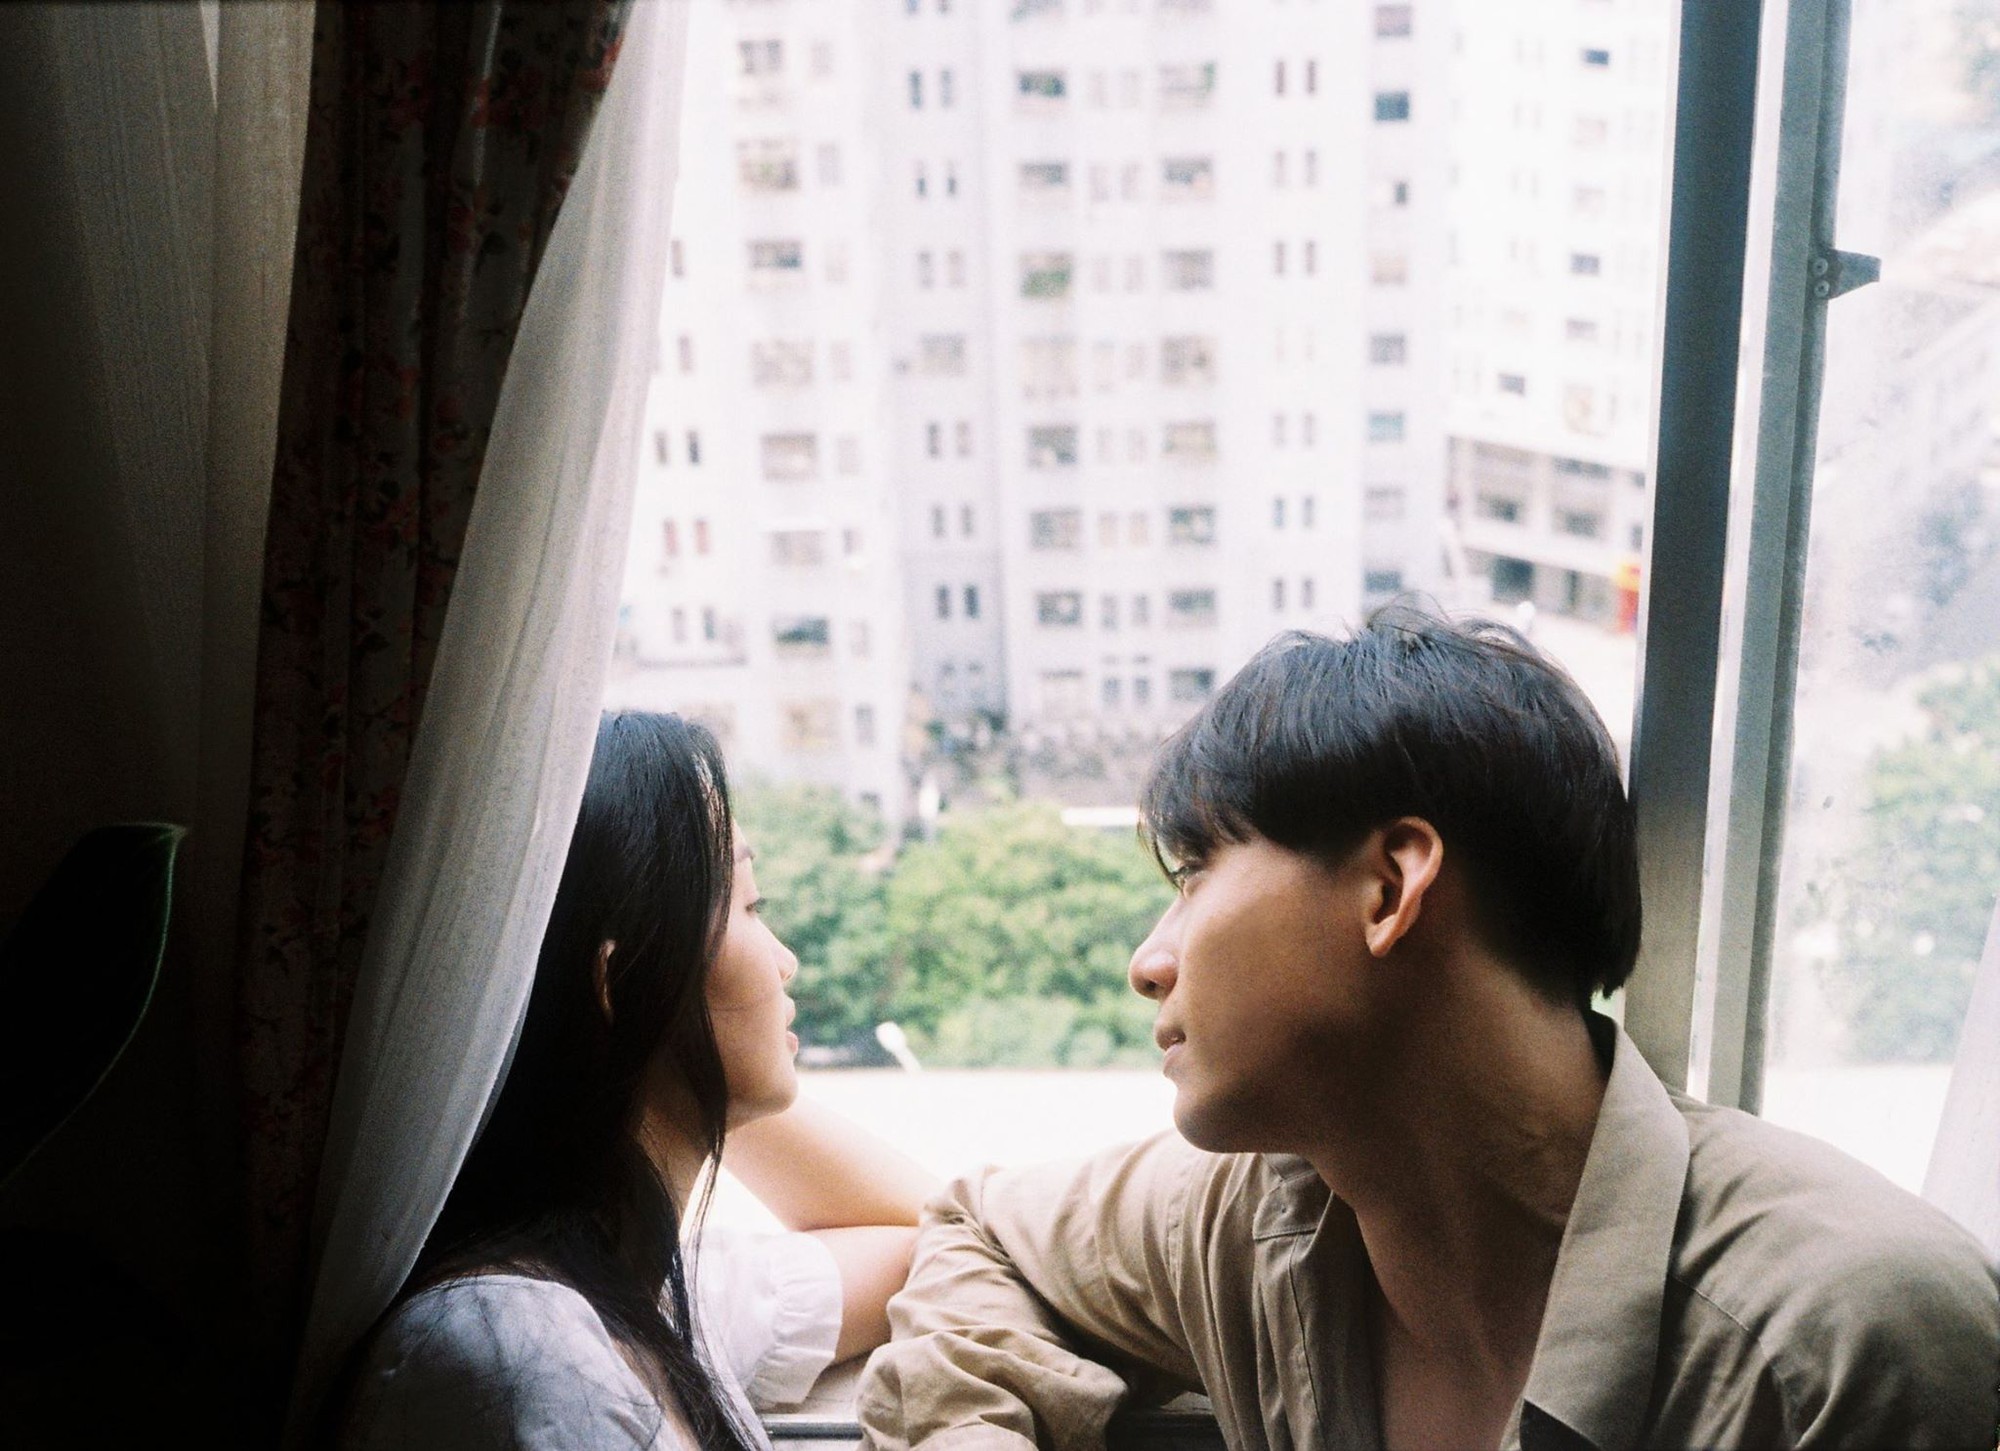 Đâu cần phải cầu kỳ, cứ yêu và chụp với nhau một bộ ảnh bằng máy phim thì không khác gì poster phim Hong Kong chất lừ - Ảnh 15.